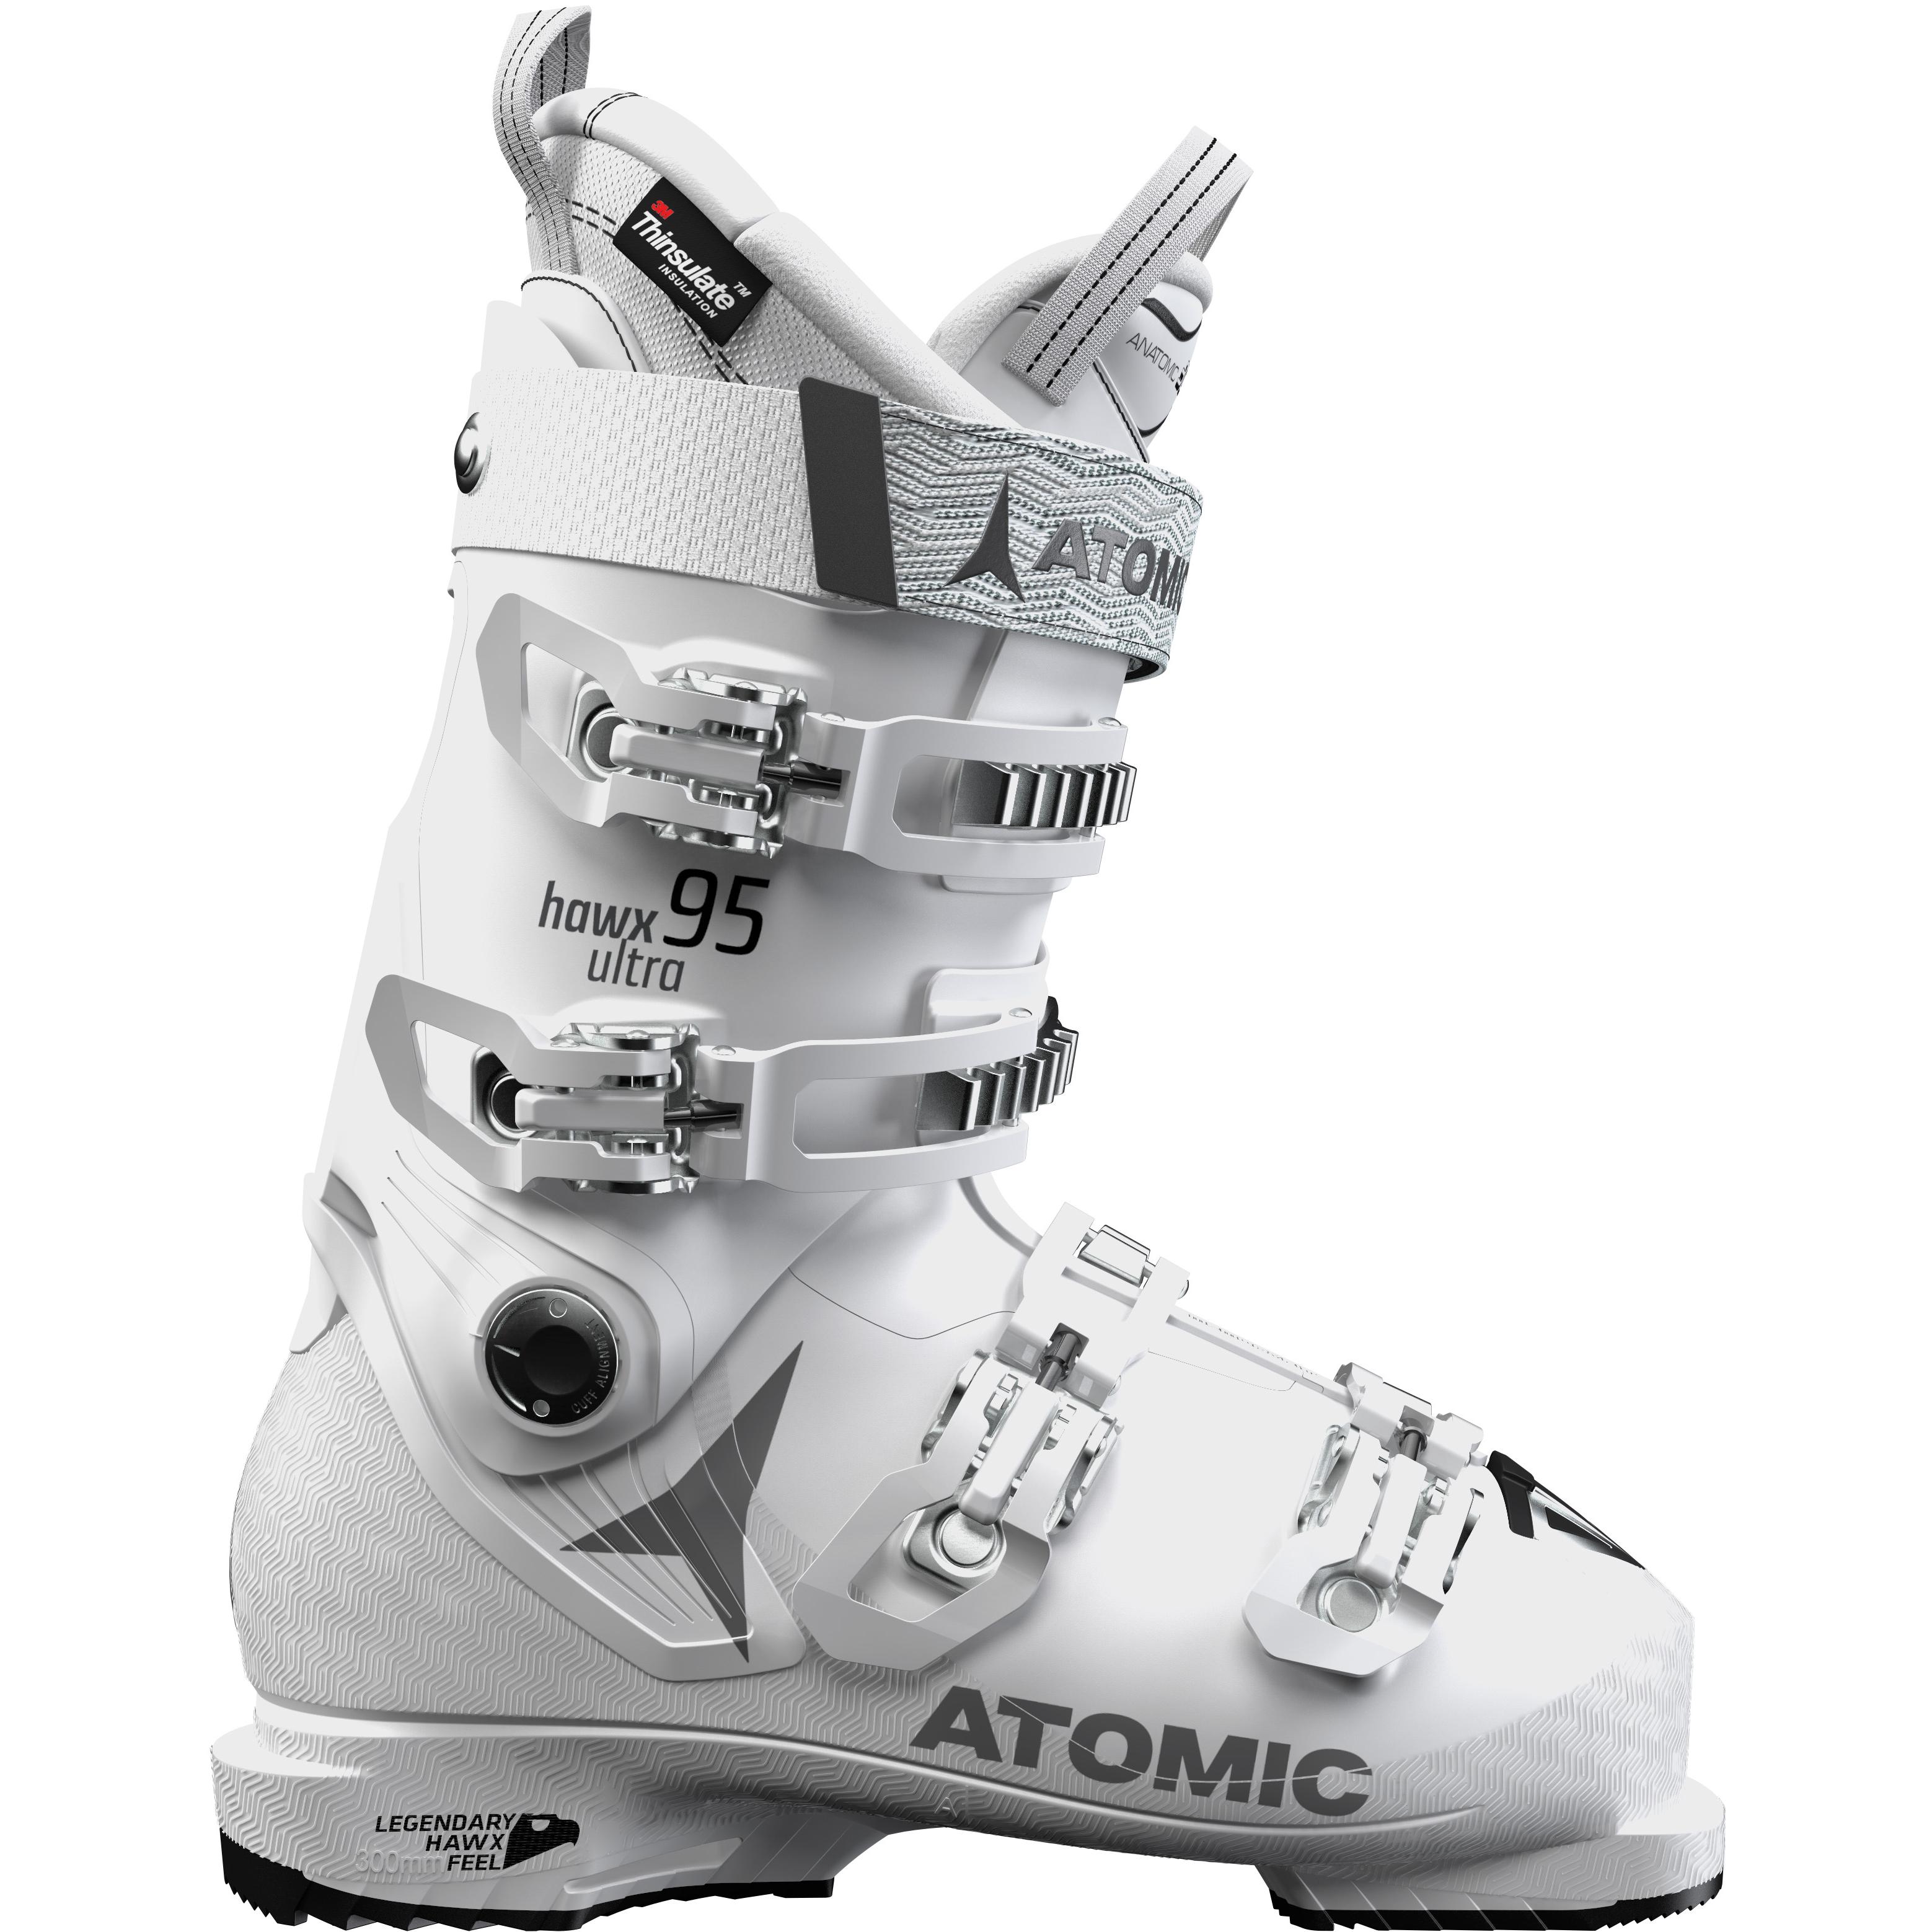 Авито купить горнолыжные ботинки. Горнолыжные ботинки Atomic Hawx. Ботинки для горных лыж Atomic Hawx Prime 95 w. Горнолыжные ботинки Atomic Hawx Ultra 95. Ботинки для горных лыж Atomic Hawx Prime 85 w.